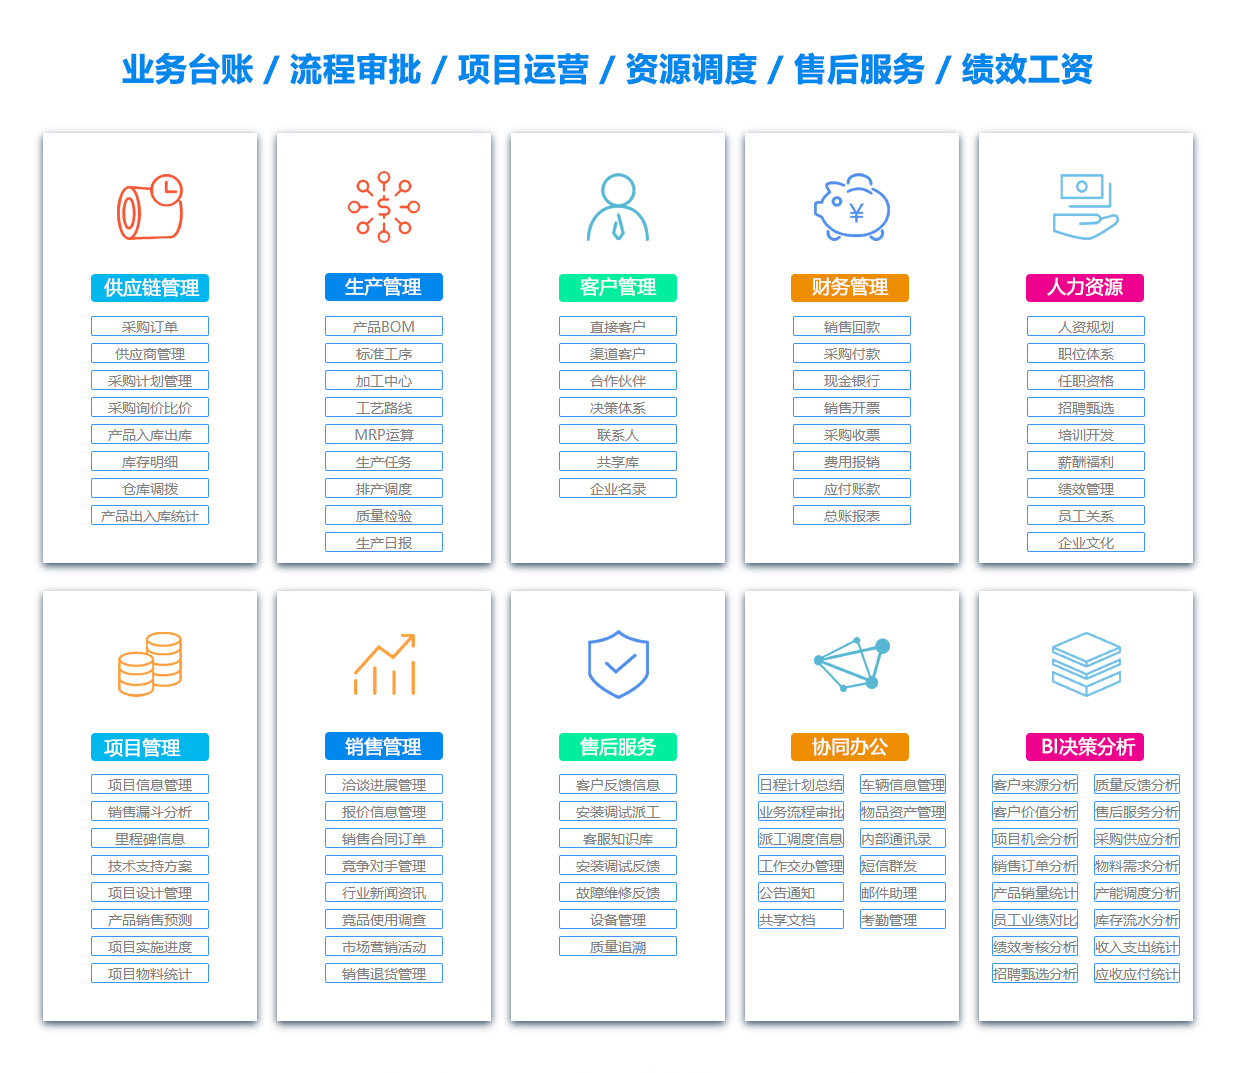 三明EIP:企业信息门户